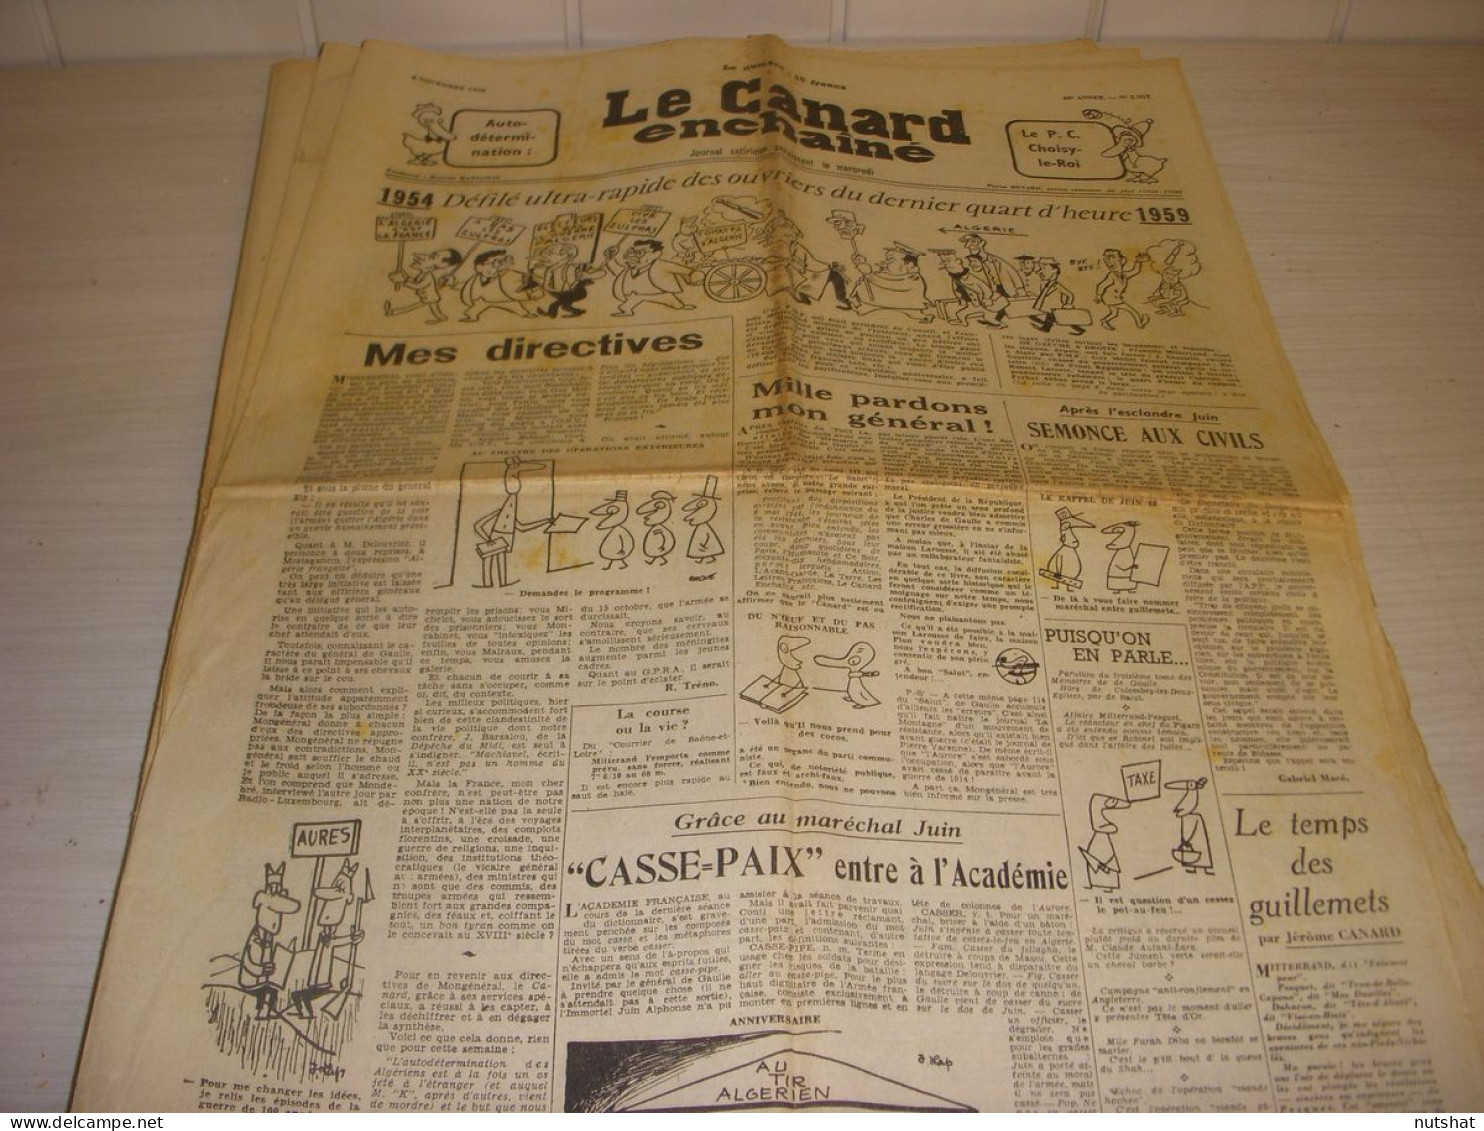 CANARD ENCHAINE 2037 04.11.1959 L'ALGERIE De 1954 A 1959 AUTANT-LARA MITTERRAND - Politique